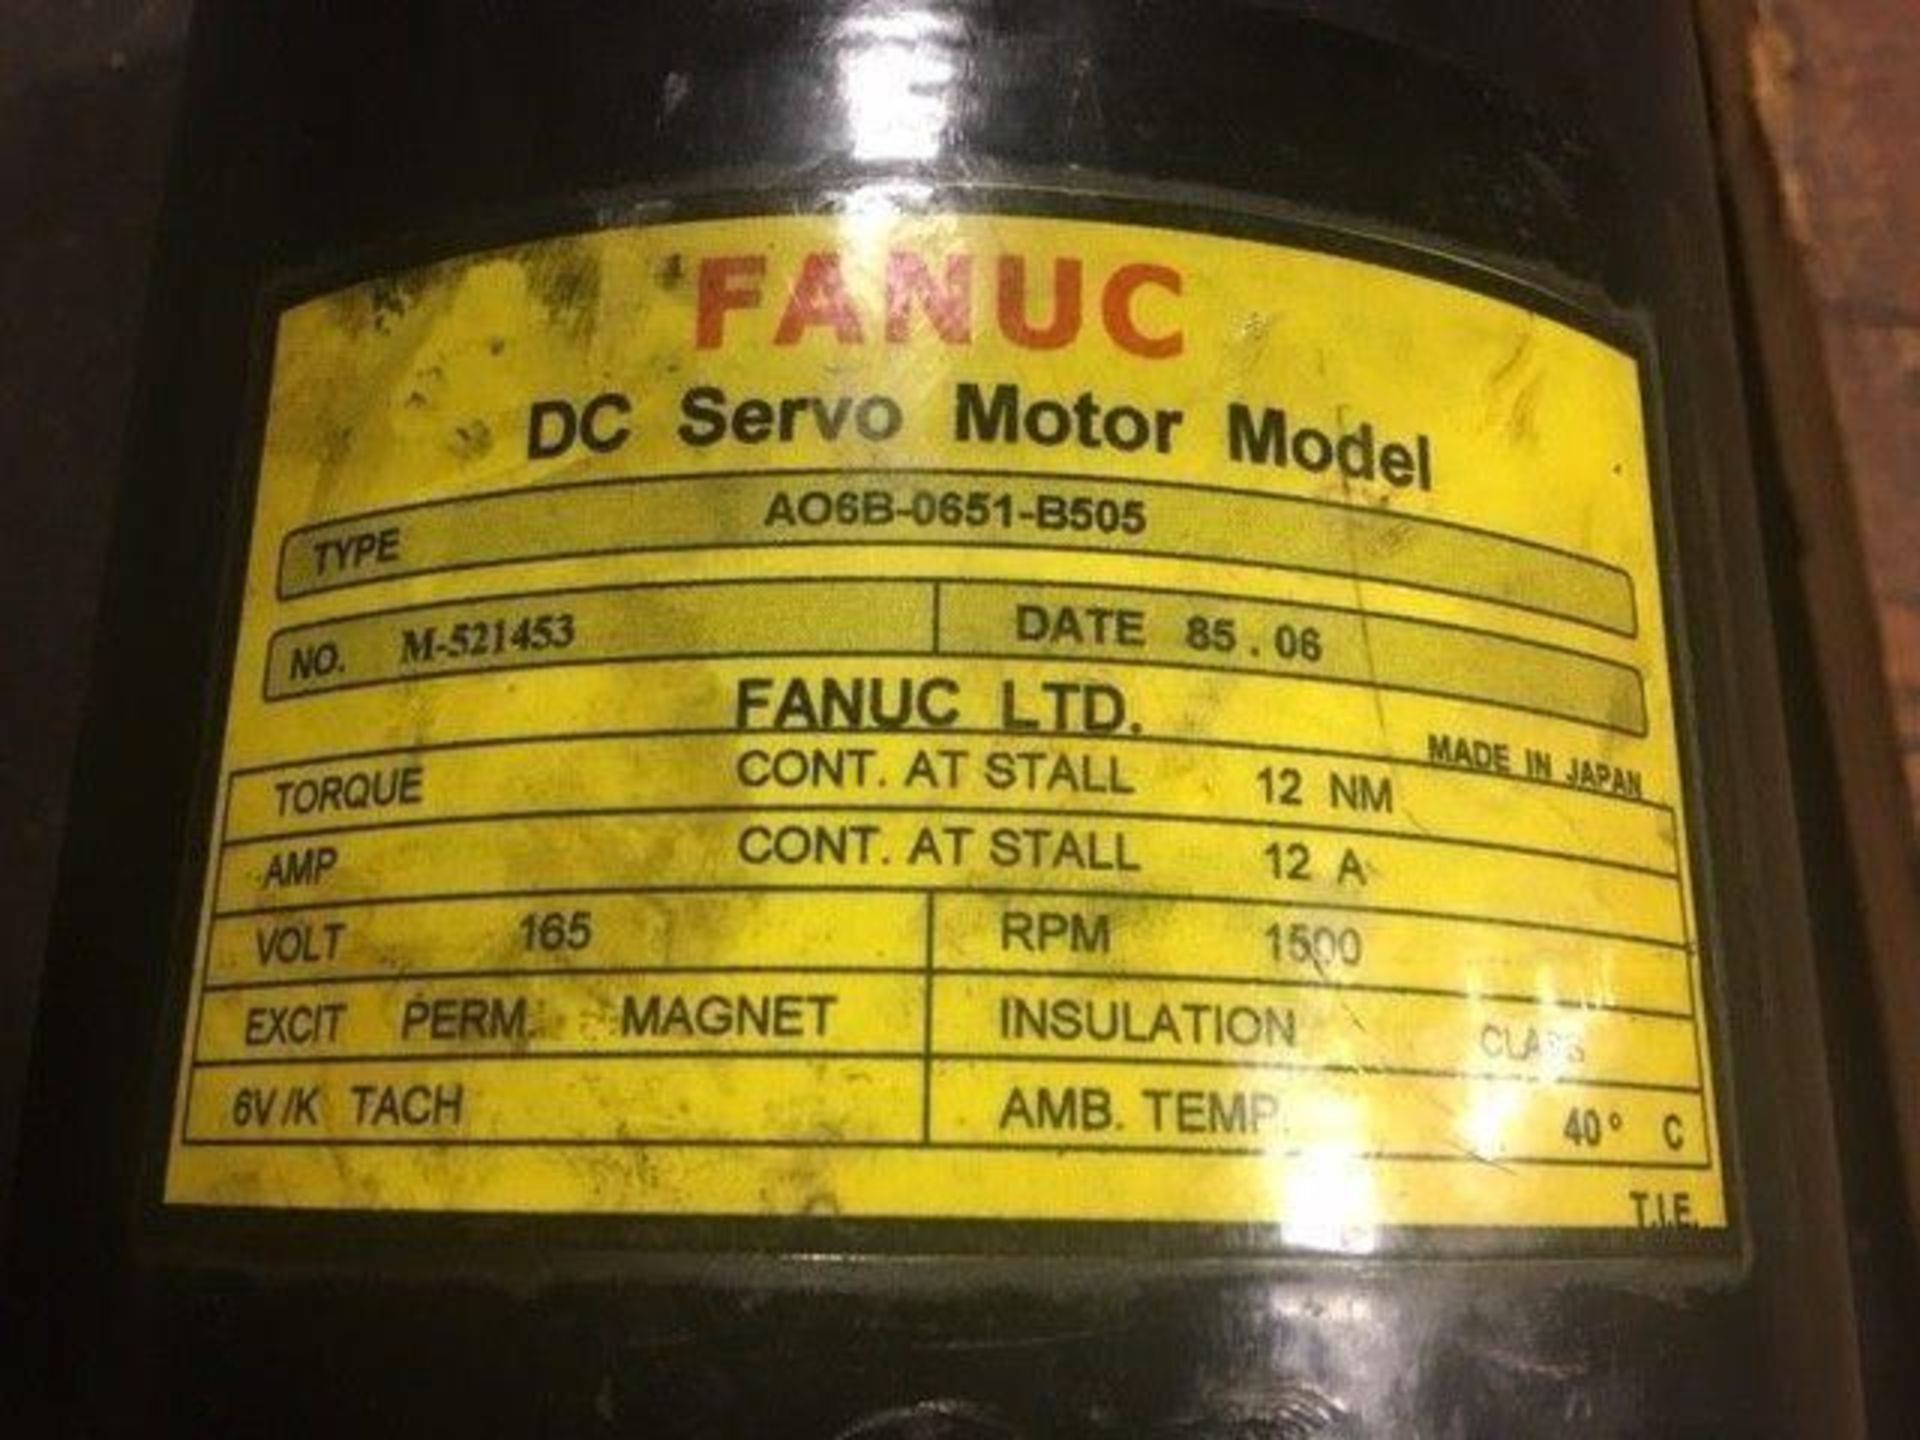 Fanuc #A06B-0651-B505 DC Servo Motor - Image 4 of 5